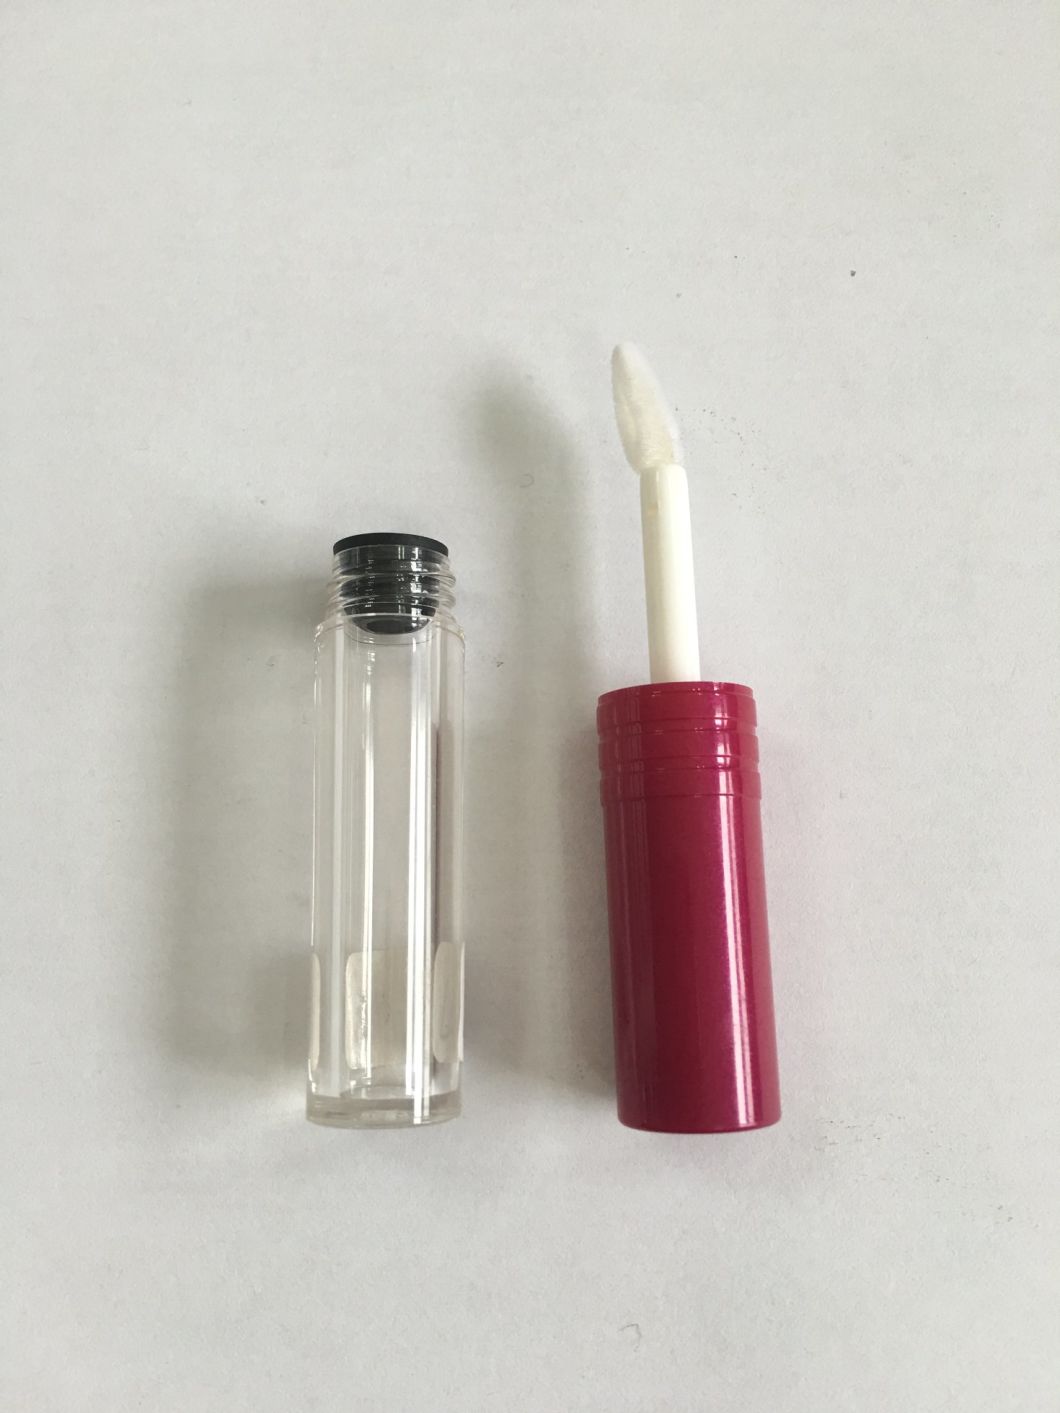 10ml Square Plastic Lip Gloss Container